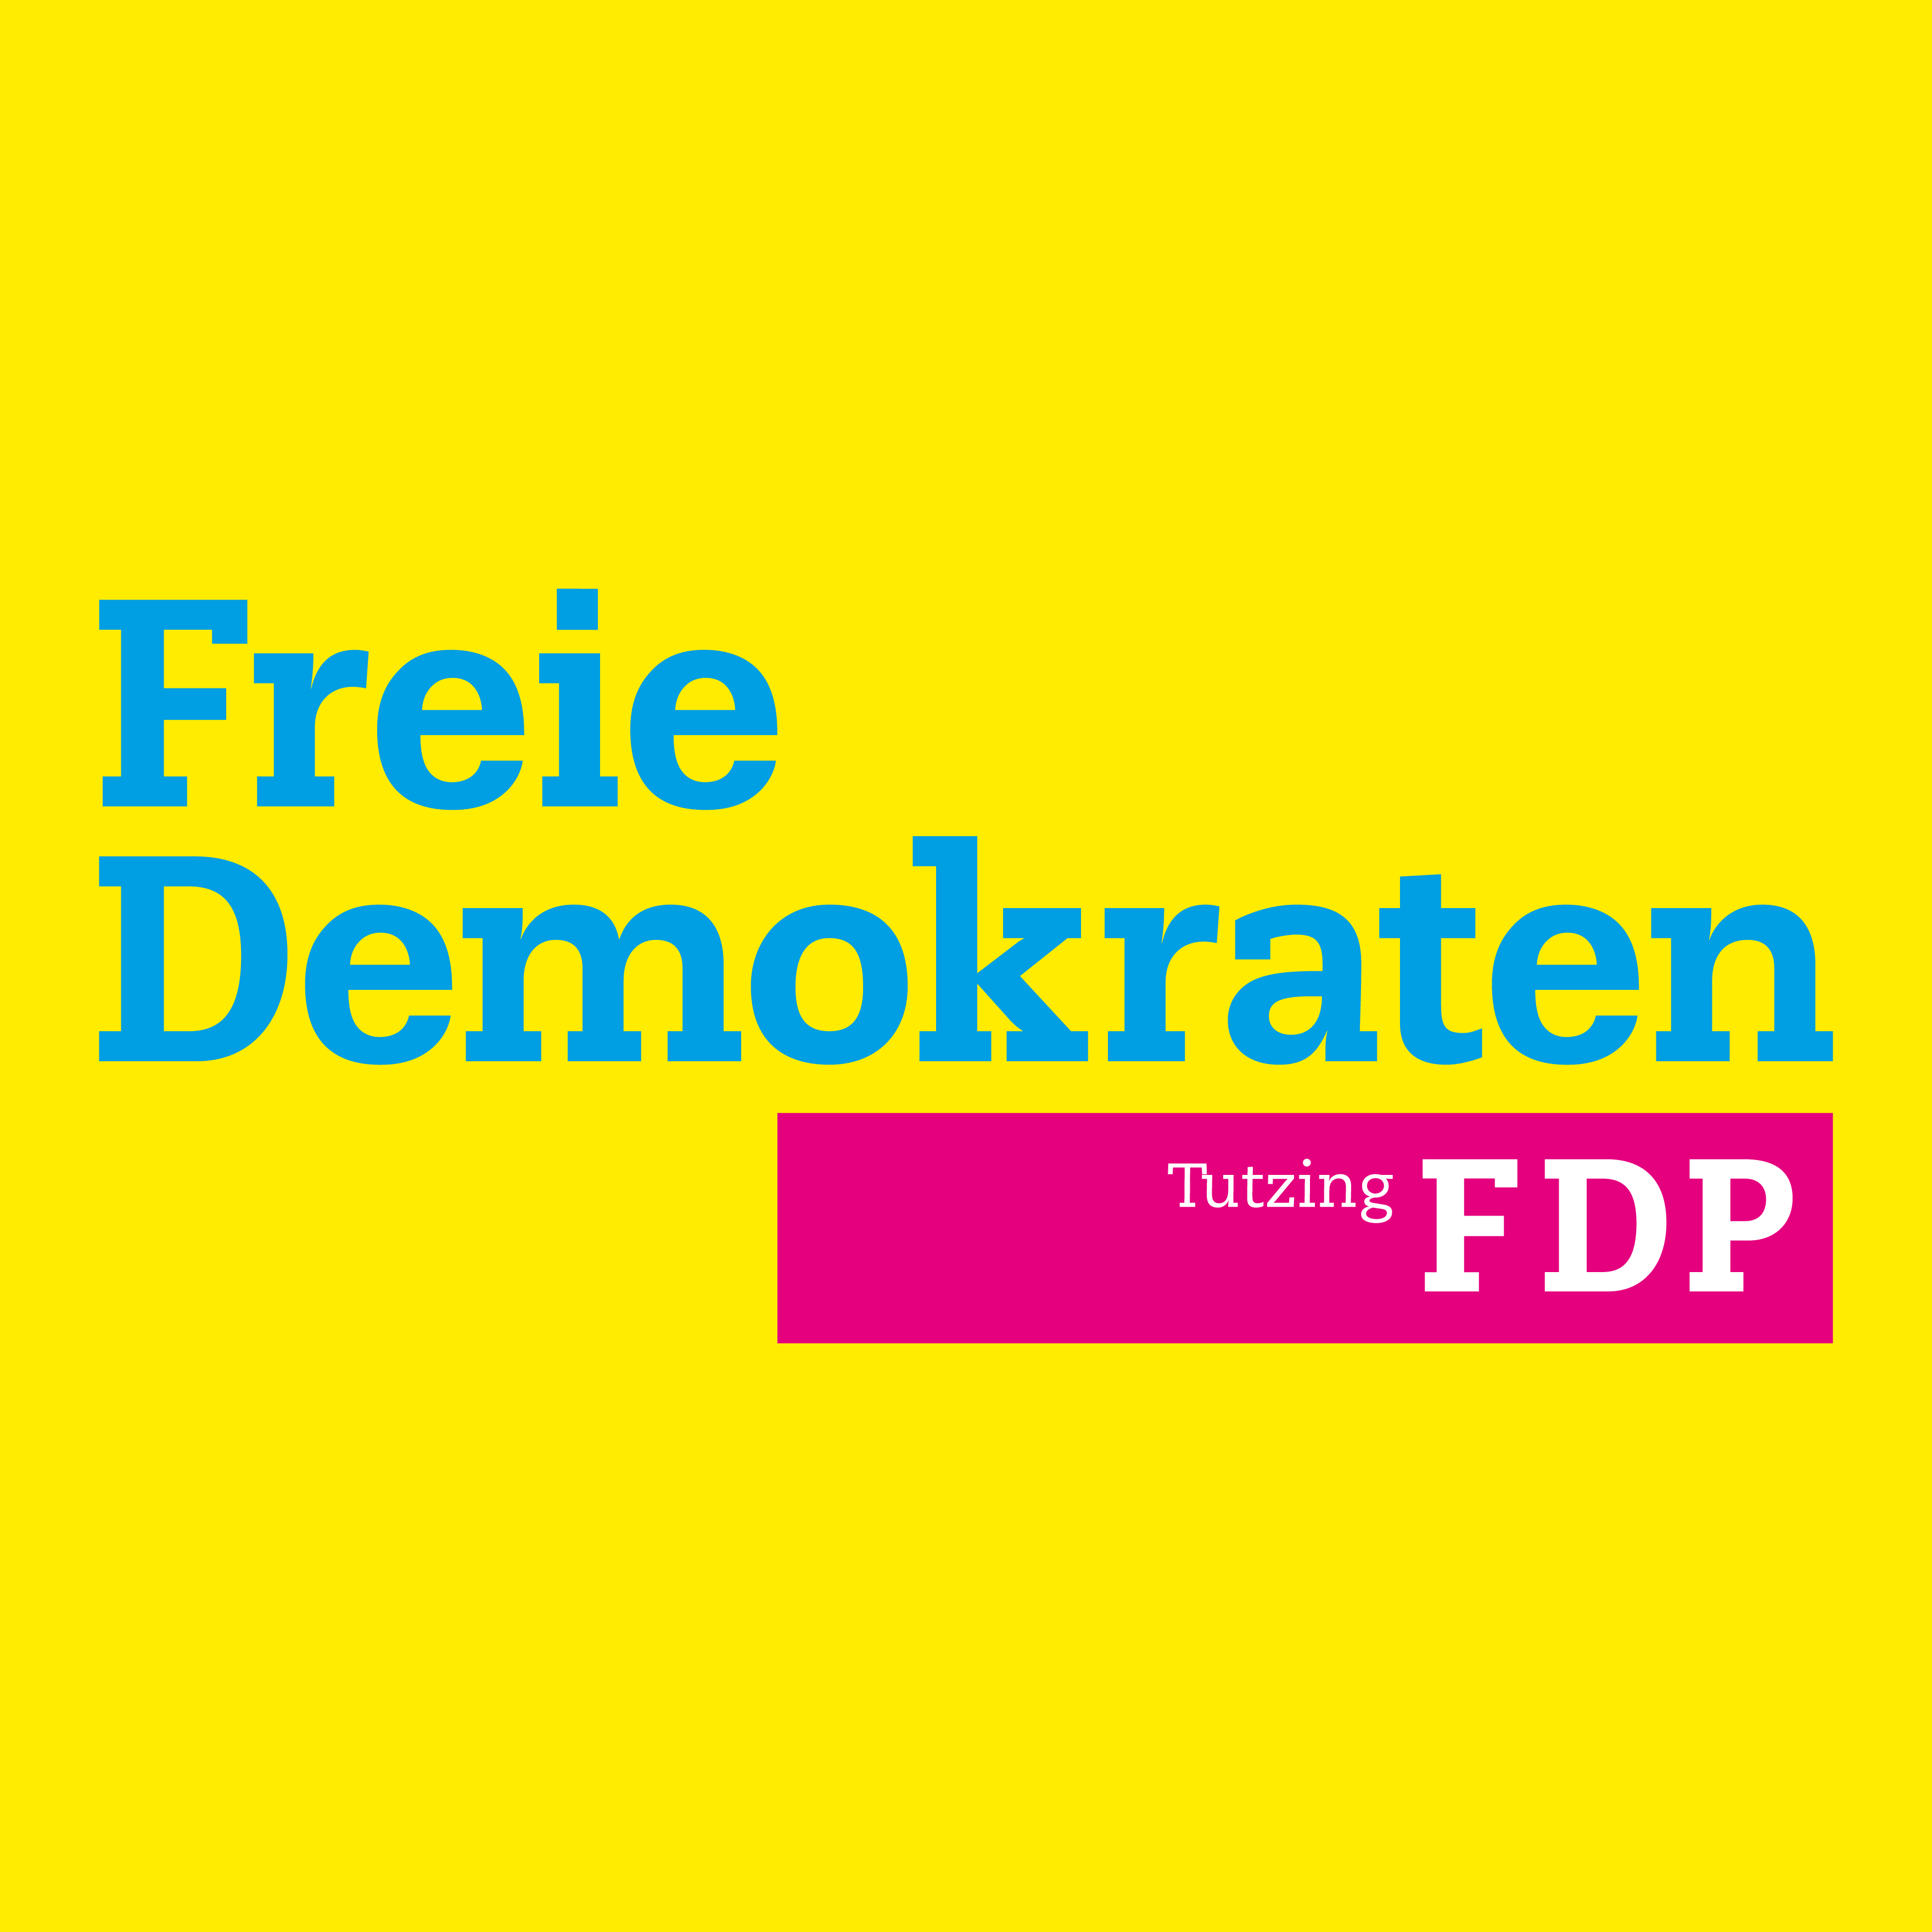 (c) Fdp-tutzing.de